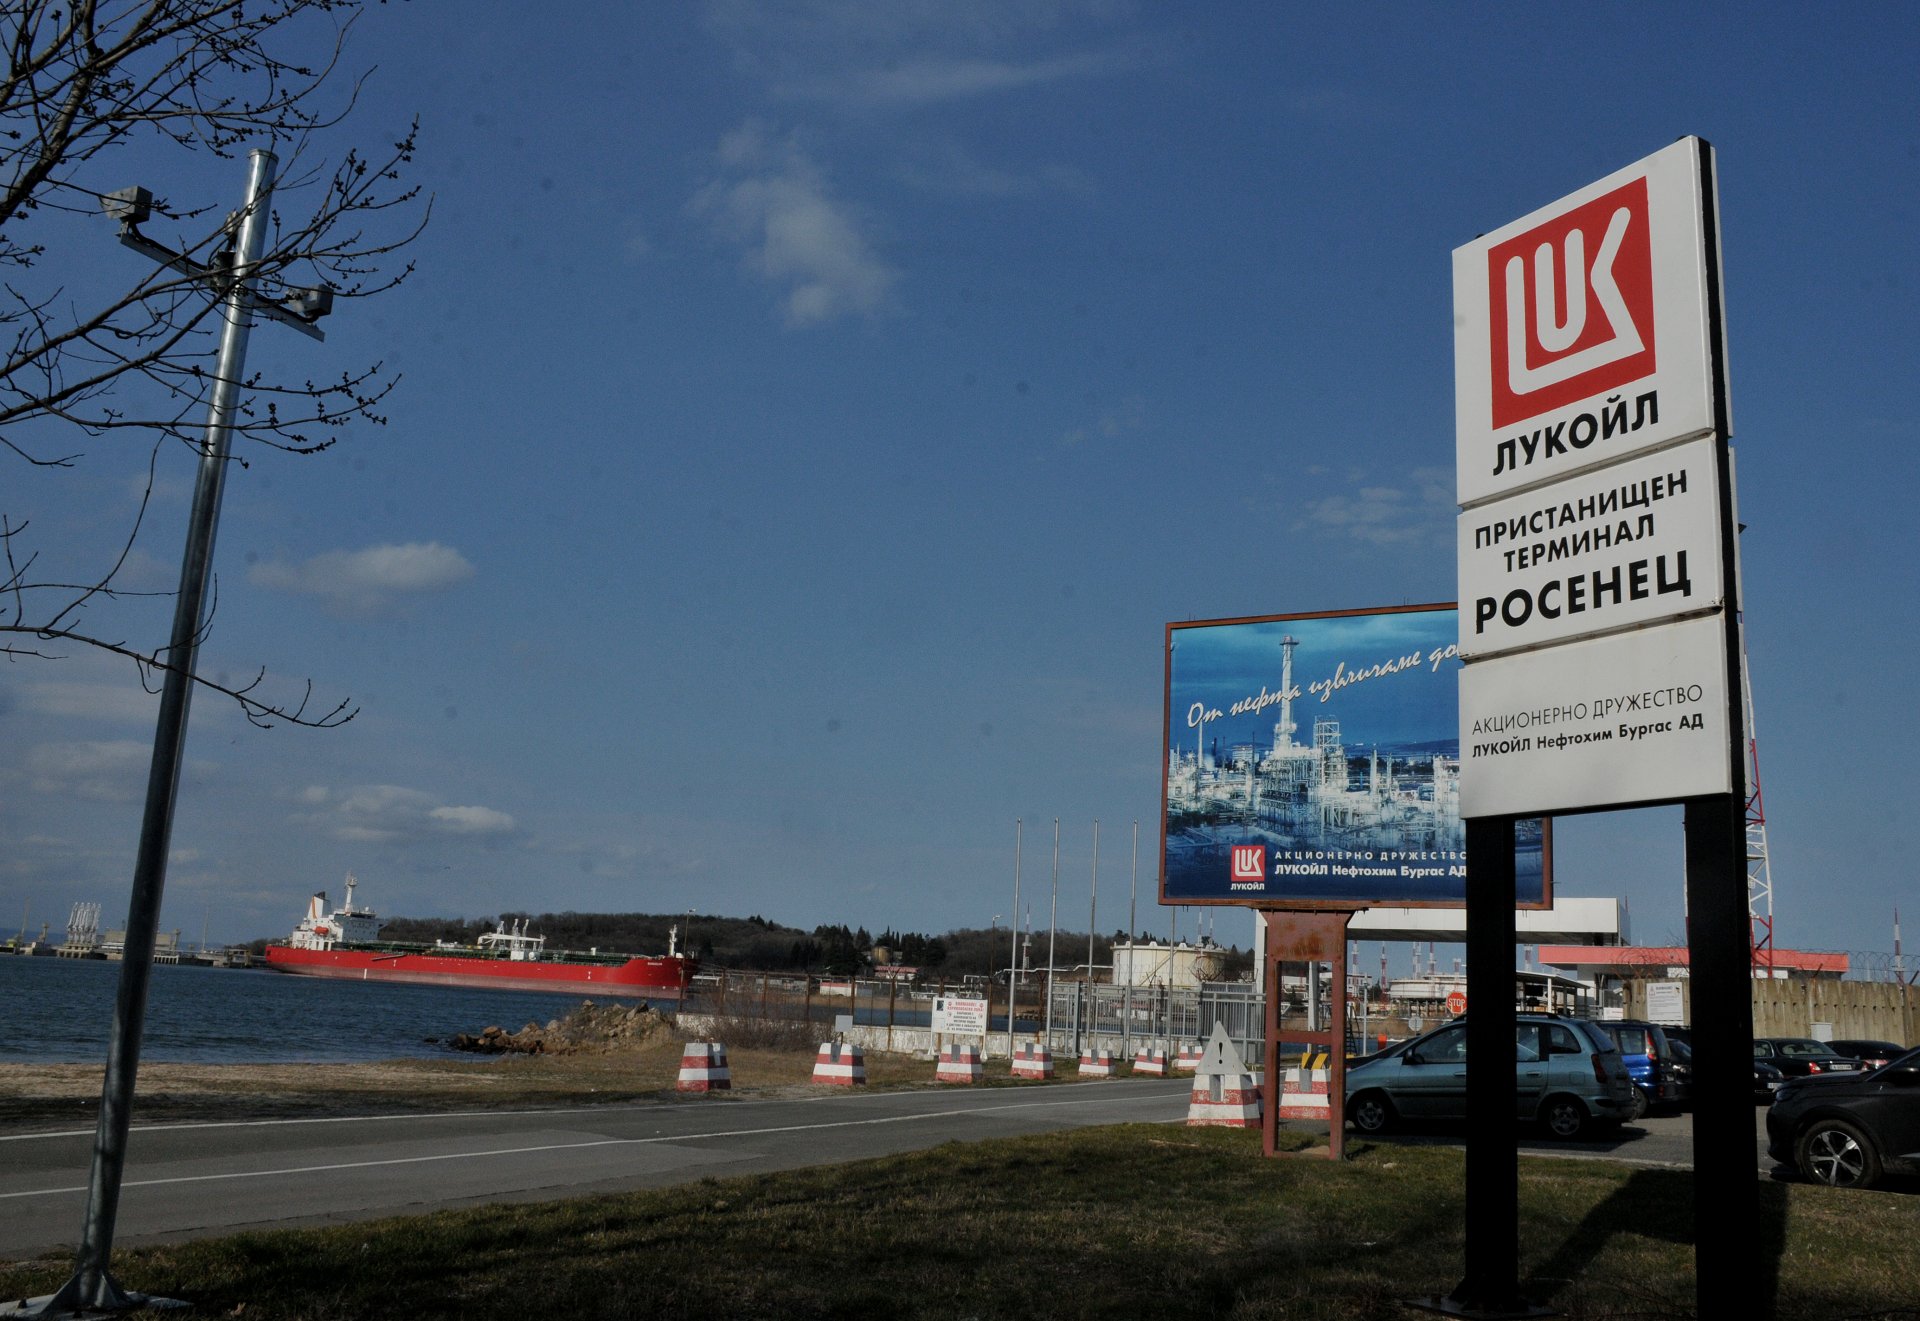 Рафинерията на "Лукойл" - Нефтохим Бургас и пристанищният терминал Росенец